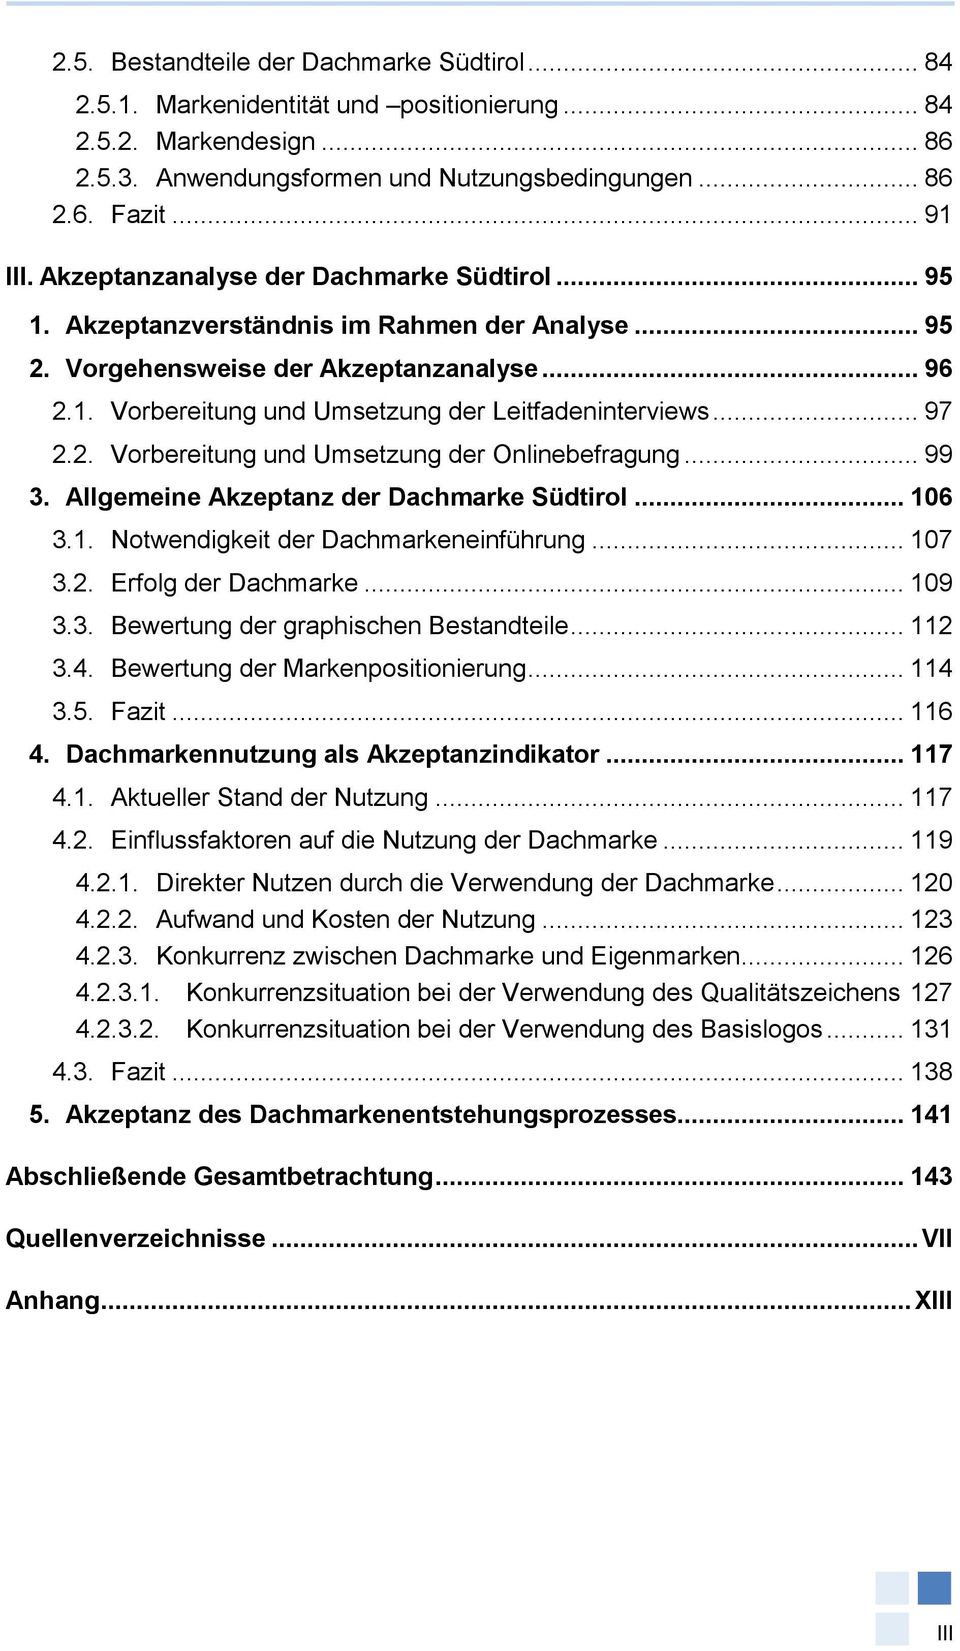 .. 97 2.2. Vorbereitung und Umsetzung der Onlinebefragung... 99 3. Allgemeine Akzeptanz der Dachmarke Südtirol... 106 3.1. Notwendigkeit der Dachmarkeneinführung... 107 3.2. Erfolg der Dachmarke.